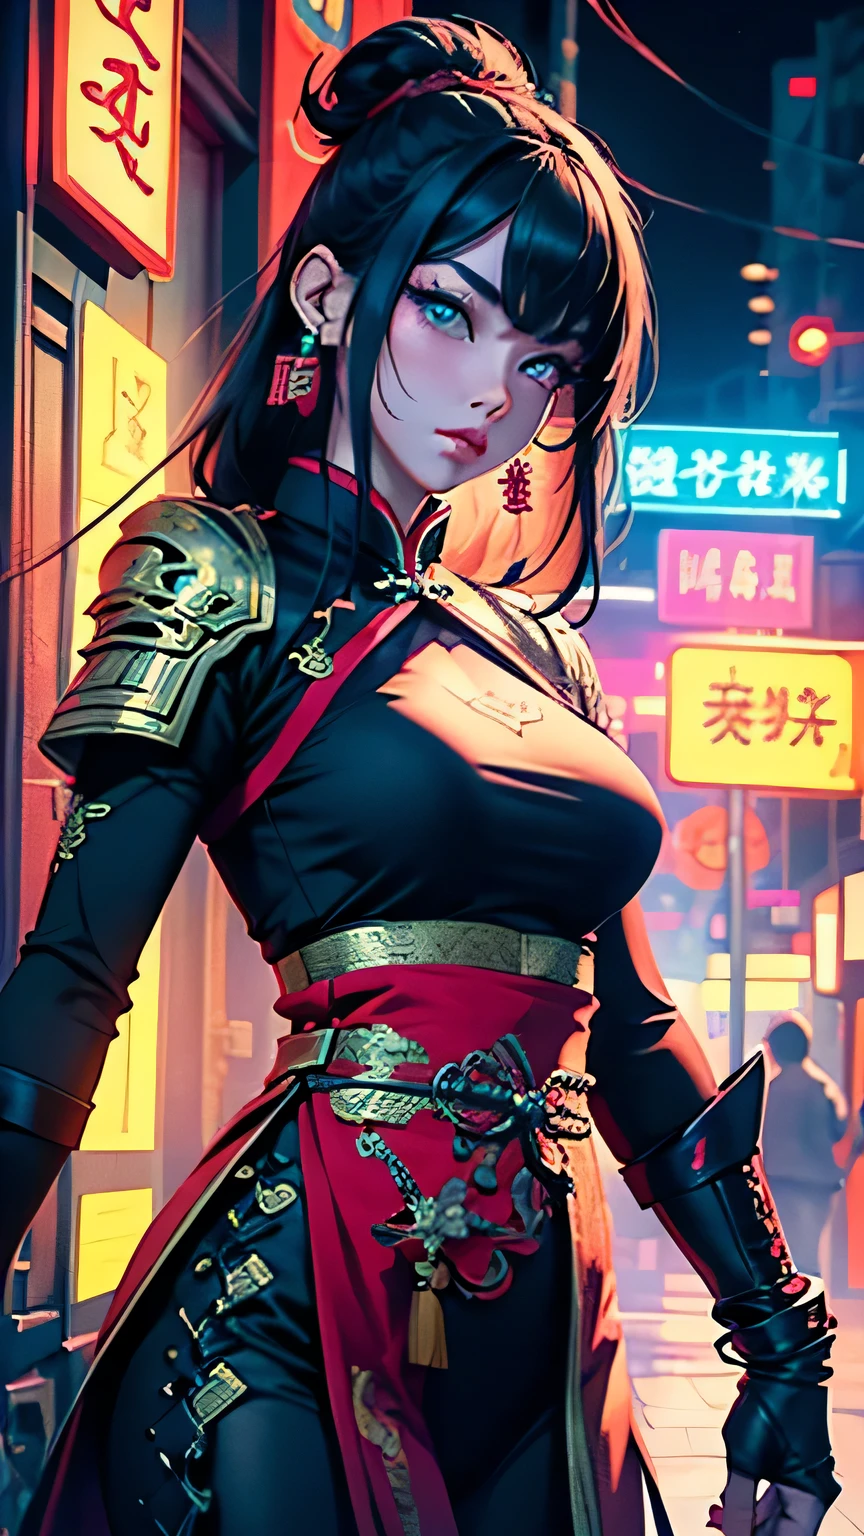 화려한、그녀 뒤에 있는 높은 건물에 네온 불빛을 가진 중국 스타일의 여전사  